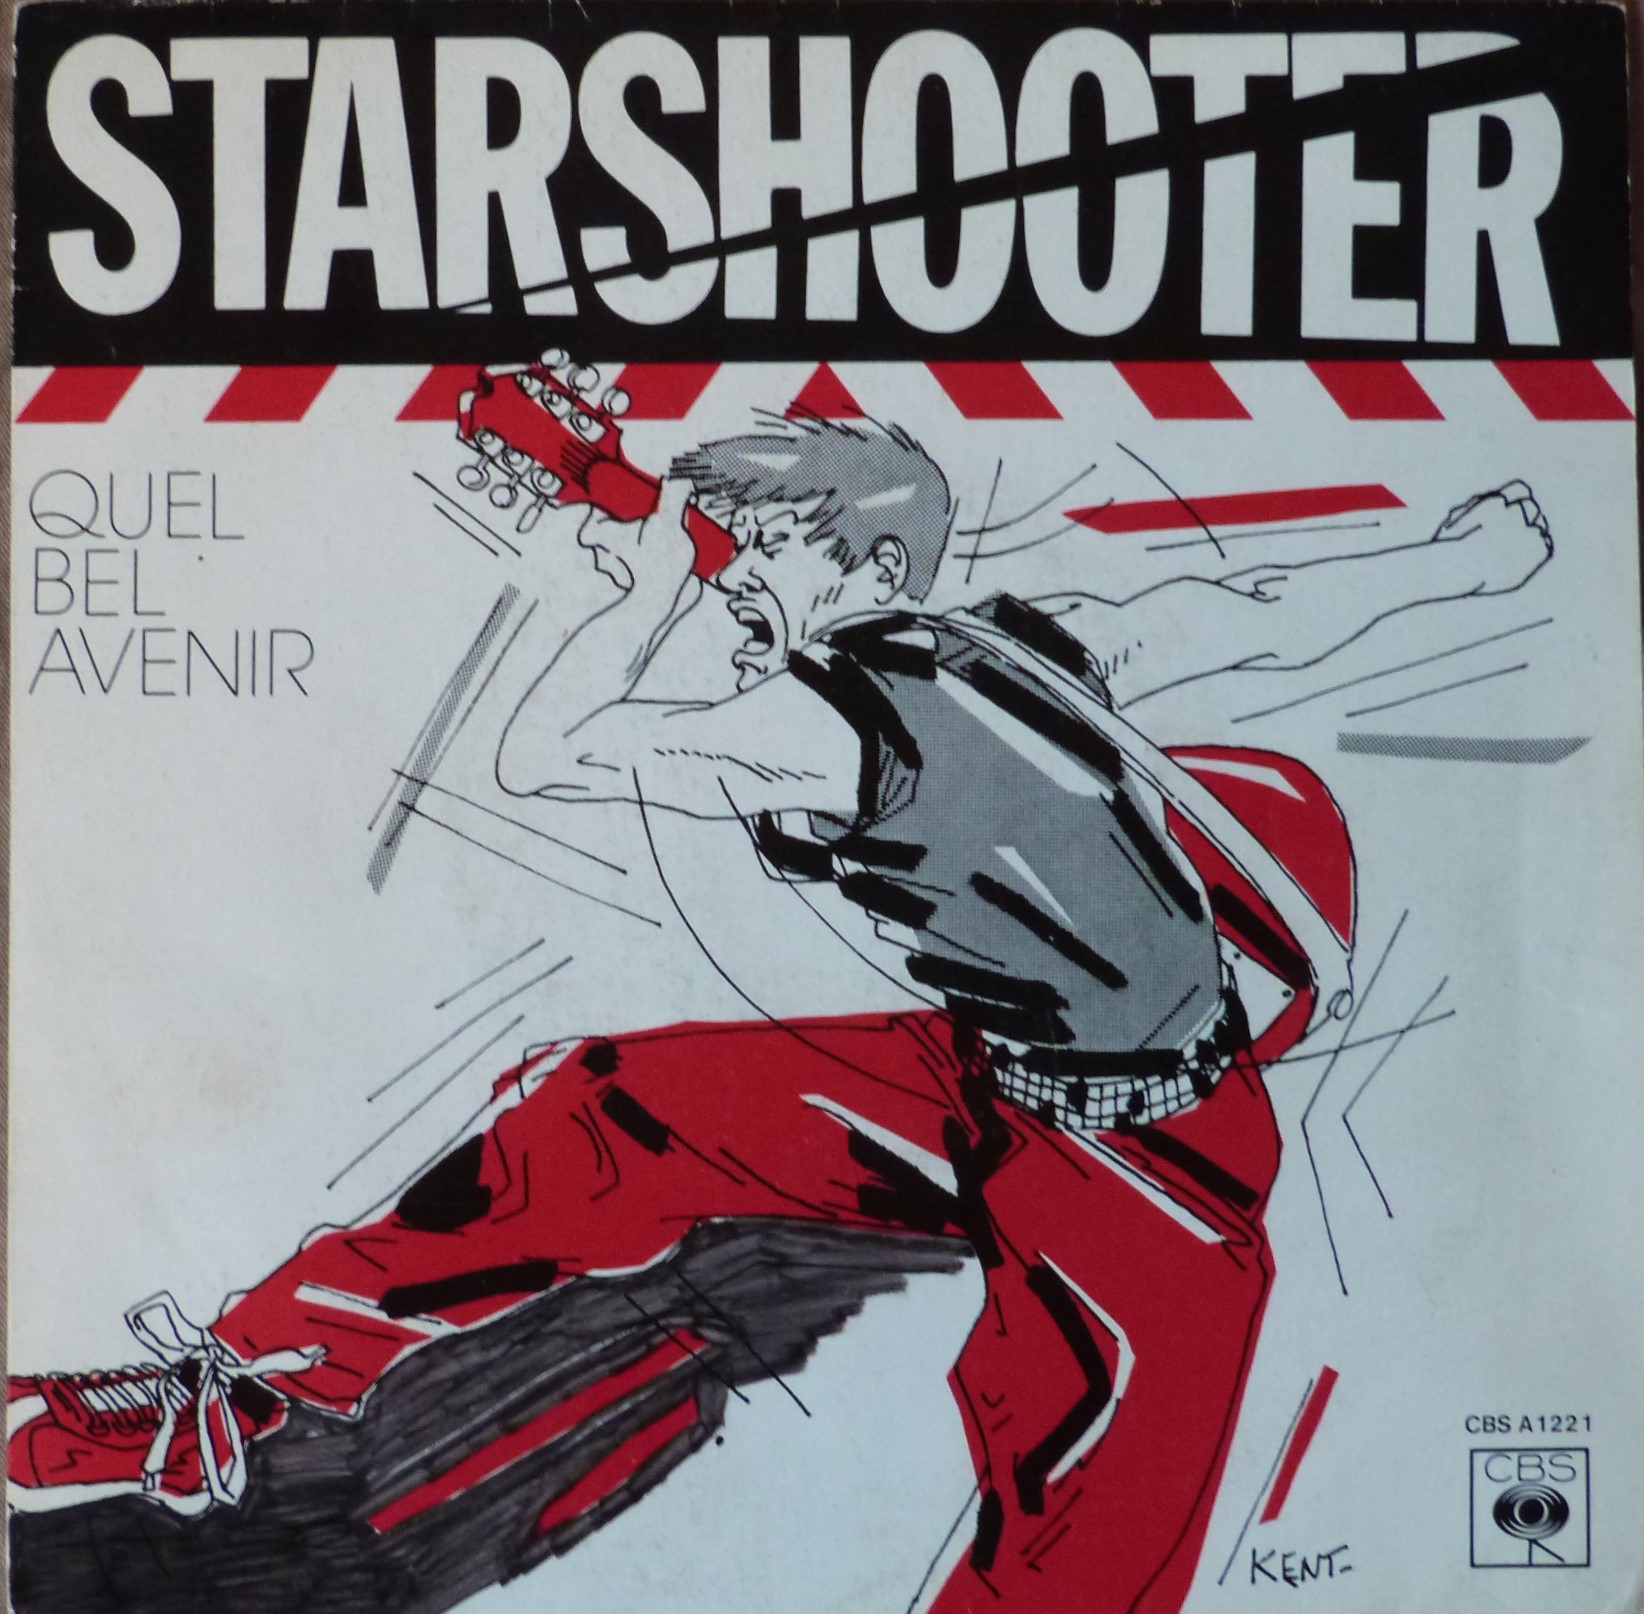 Starshooter